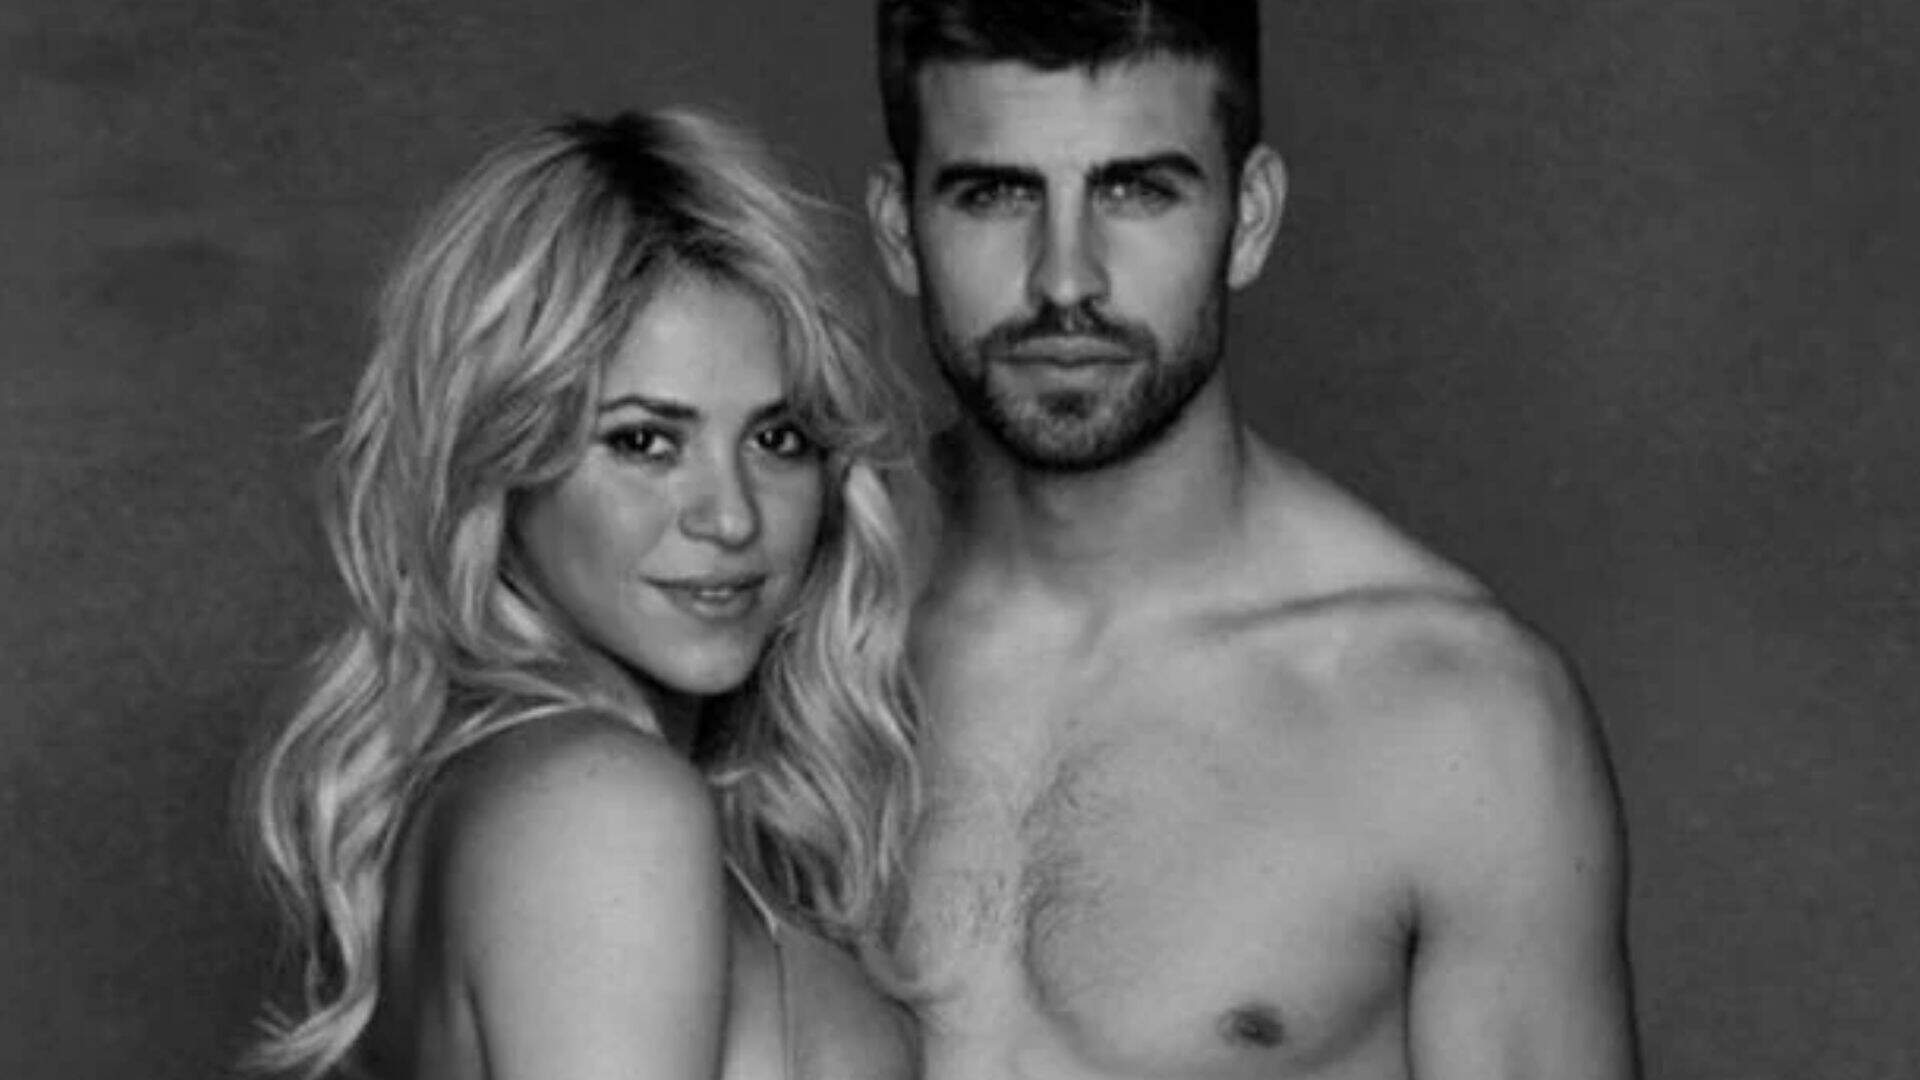 Confirmado!? Shakira e Gerard Piqué se pronunciam pela primeira vez sobre suposta separação - Metropolitana FM